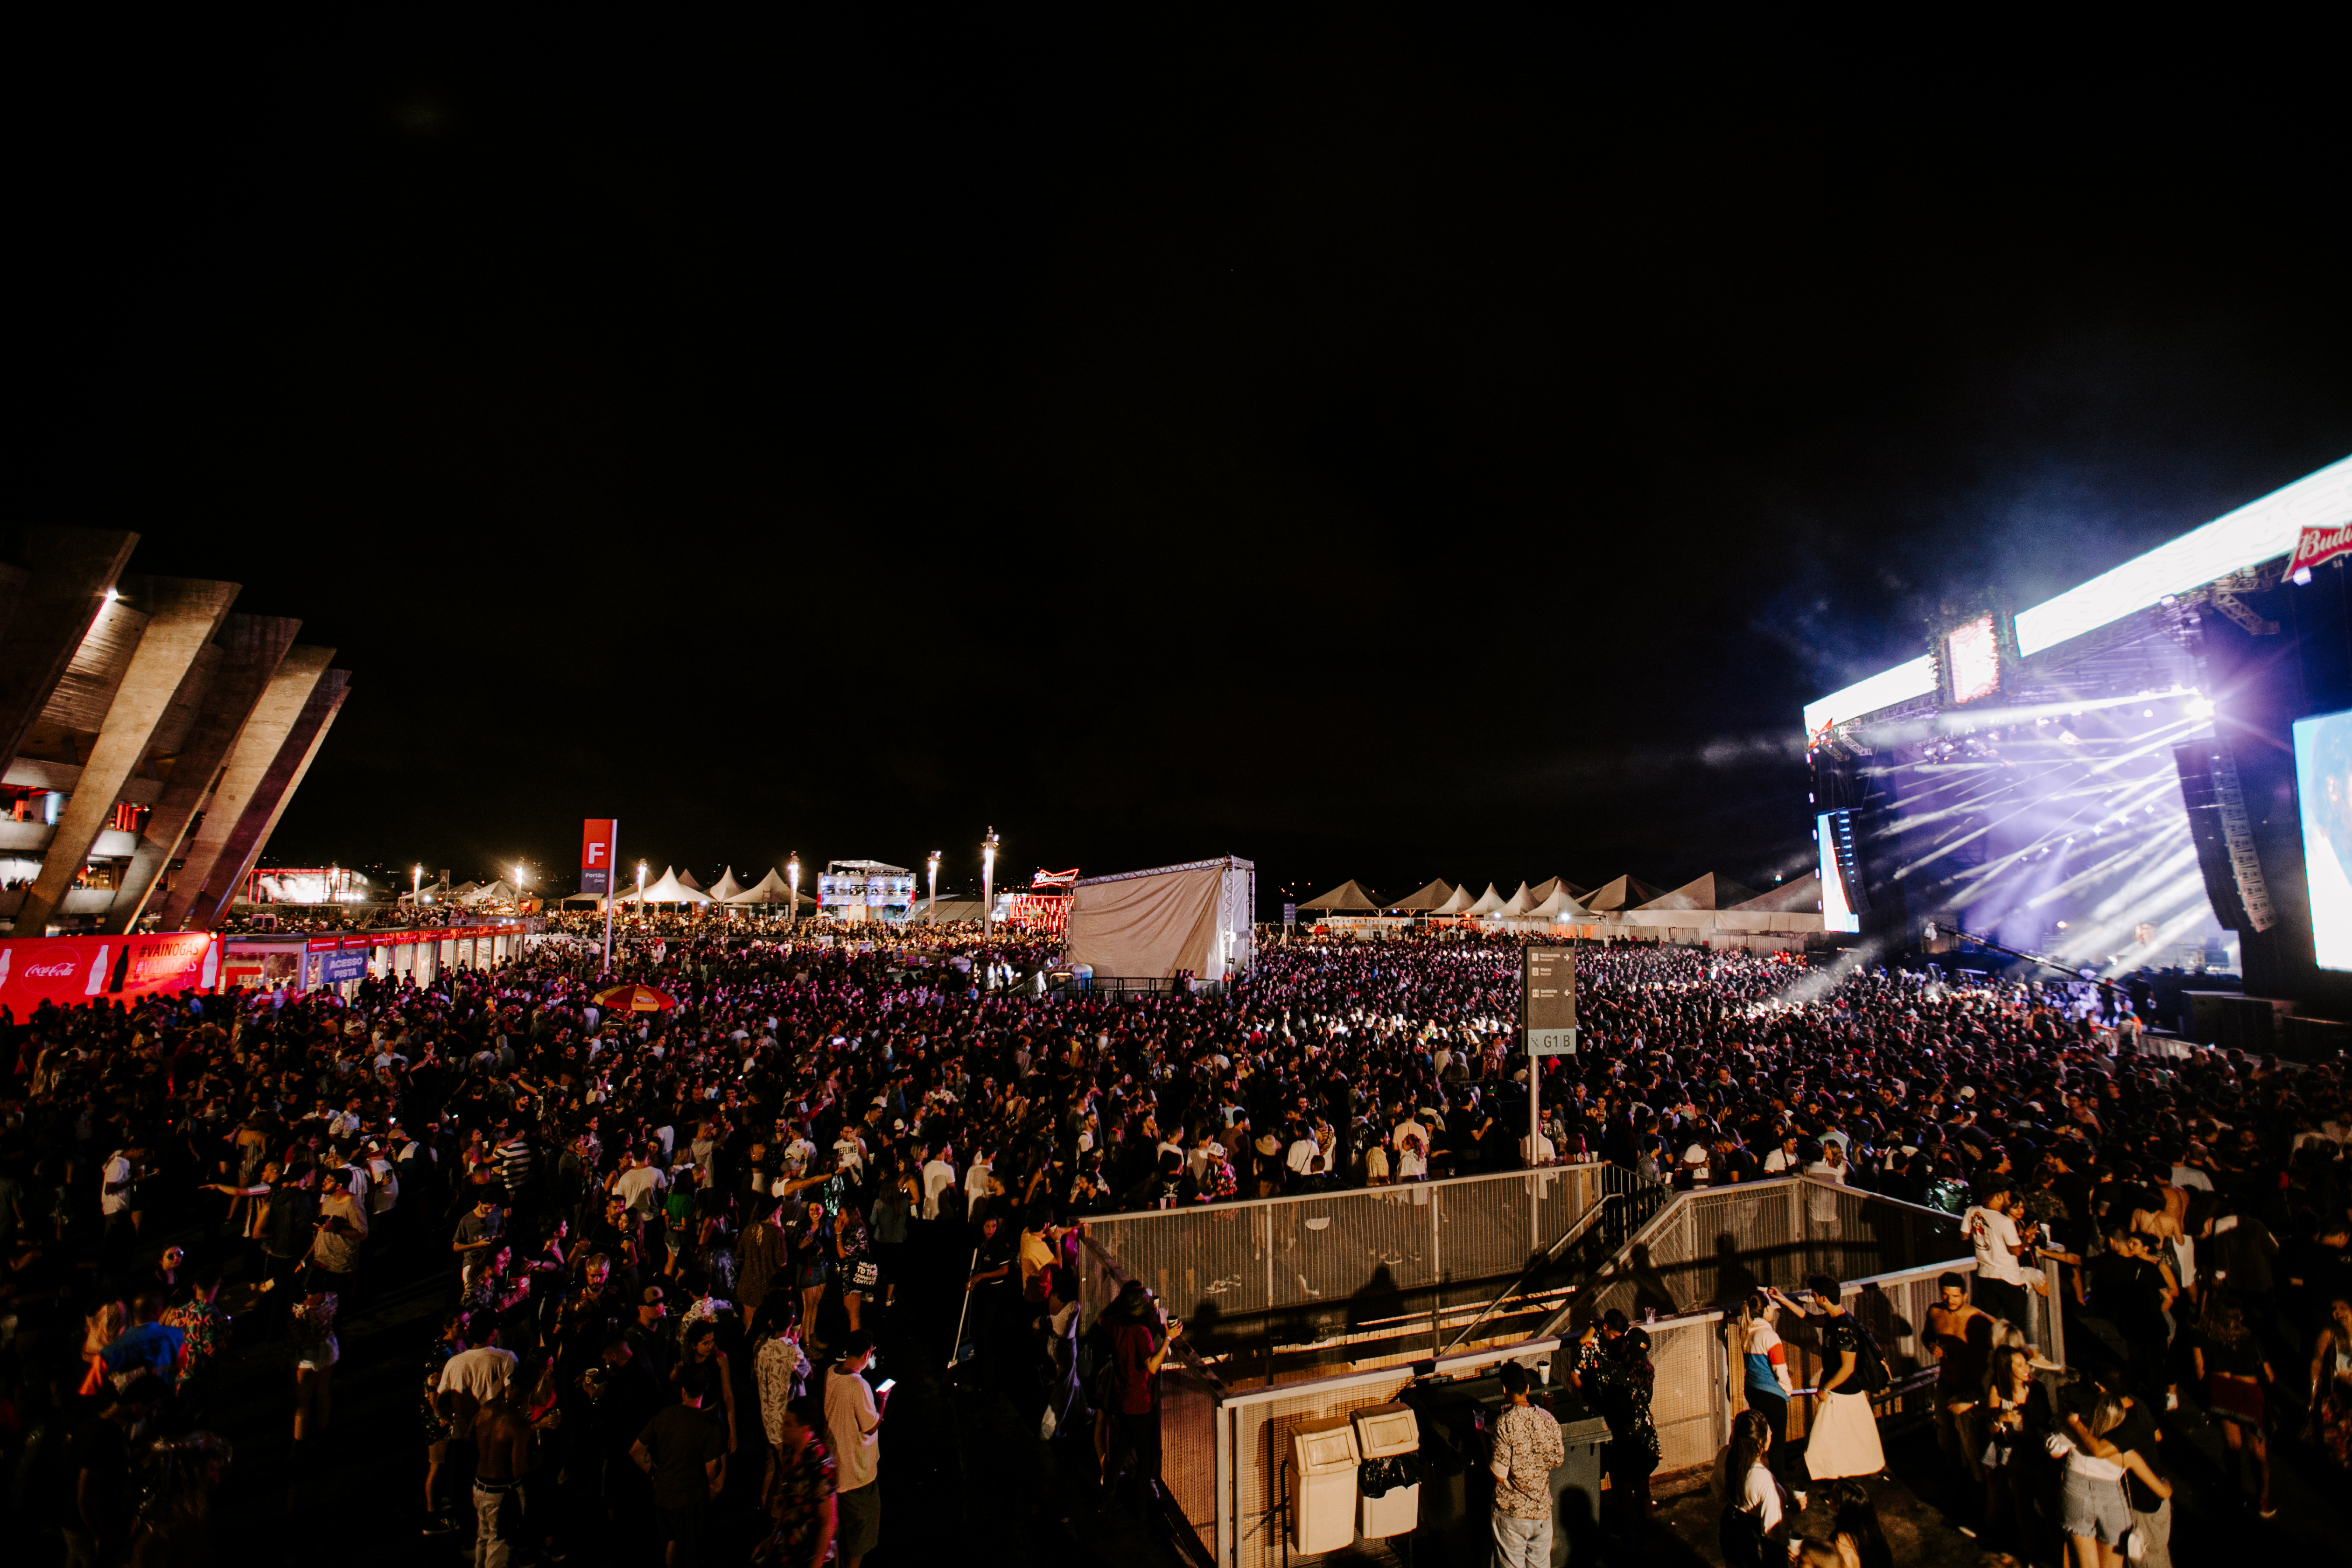 Foto noturna mostra uma vista panorâmica do Festival Planeta Brasil. À esquerda é possível ver o Mineirão, a esplanada está com um grande público que assiste ao show em um palco à direita da imagem.